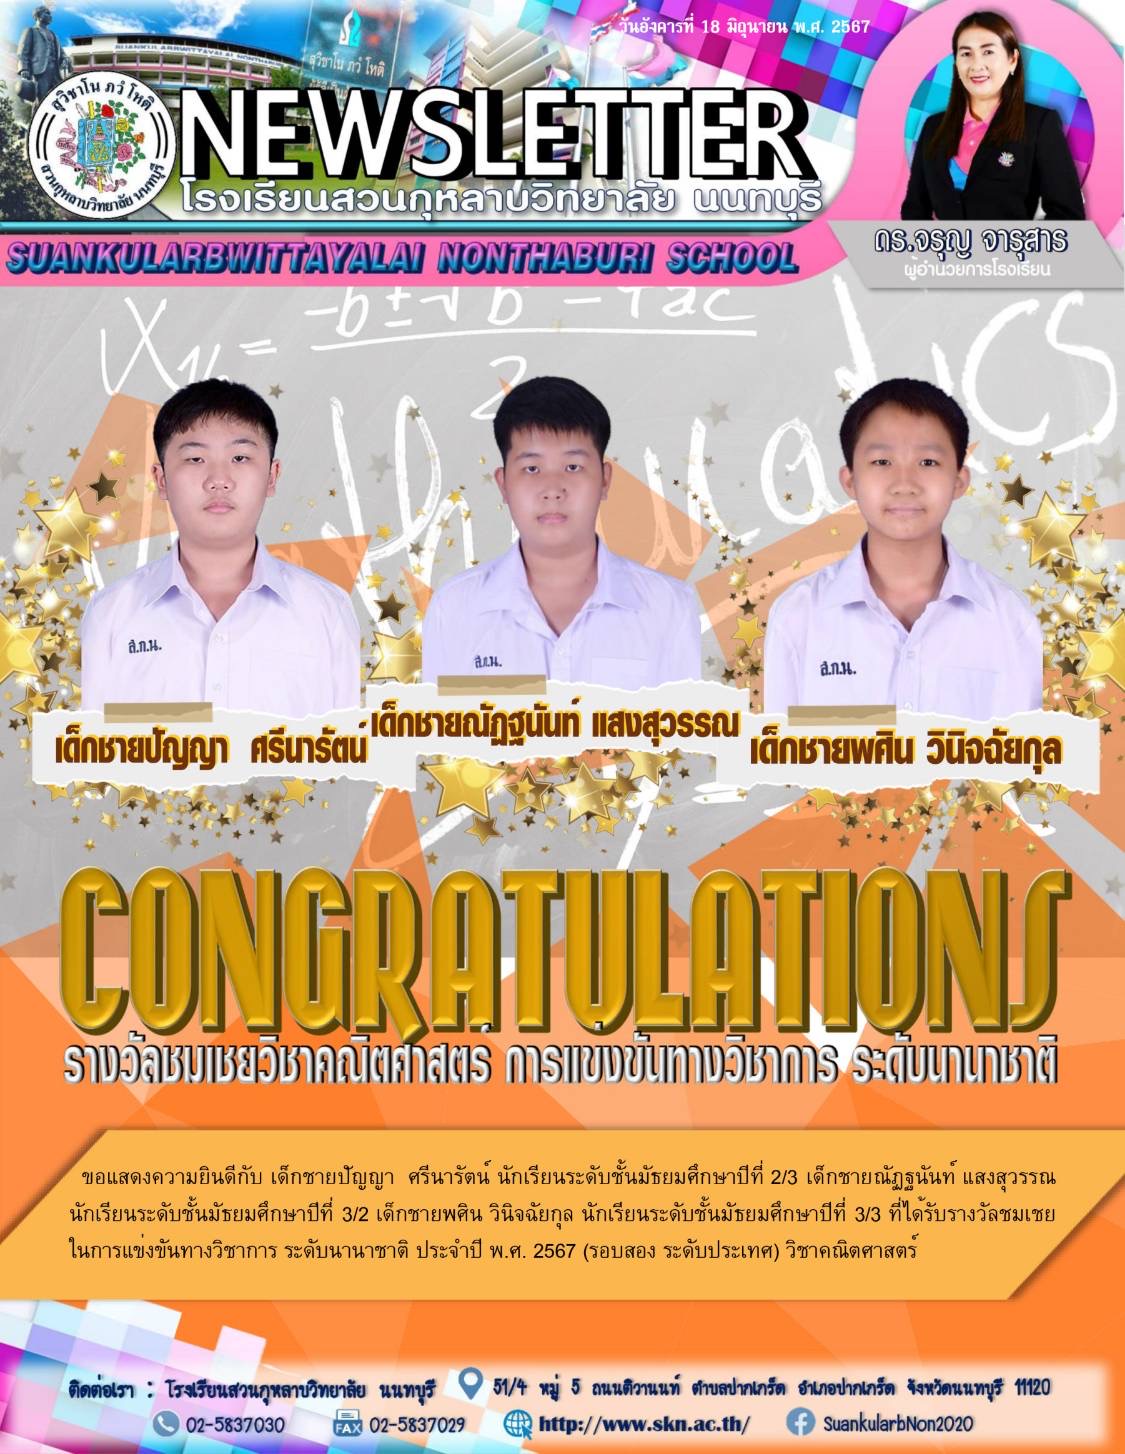 แสดงความยินดีกับ นักเรียนที่ได้รับรางวัลชมเชย วิชาคณิตศาสตร์ การแข่งขันวิชาการ ระดับนานาชาติ